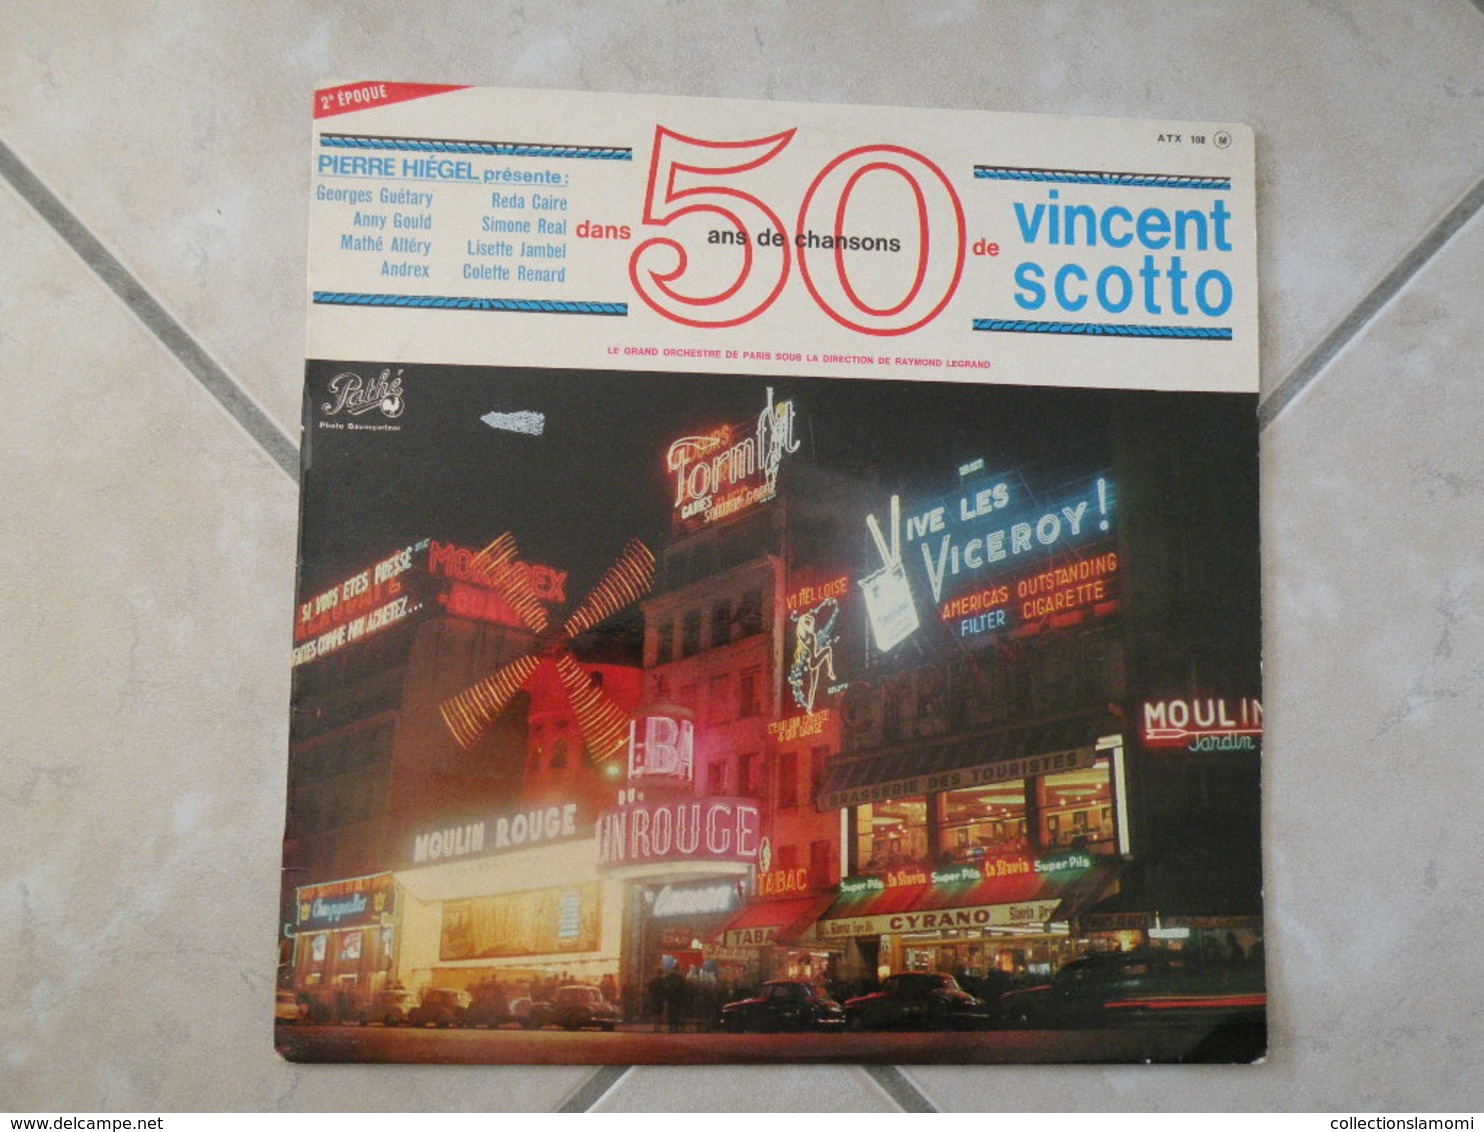 50 Ans De Chansons De Vincent Scotto - (Titres Sur Photos) - Vinyle 33 T LP - Humour, Cabaret